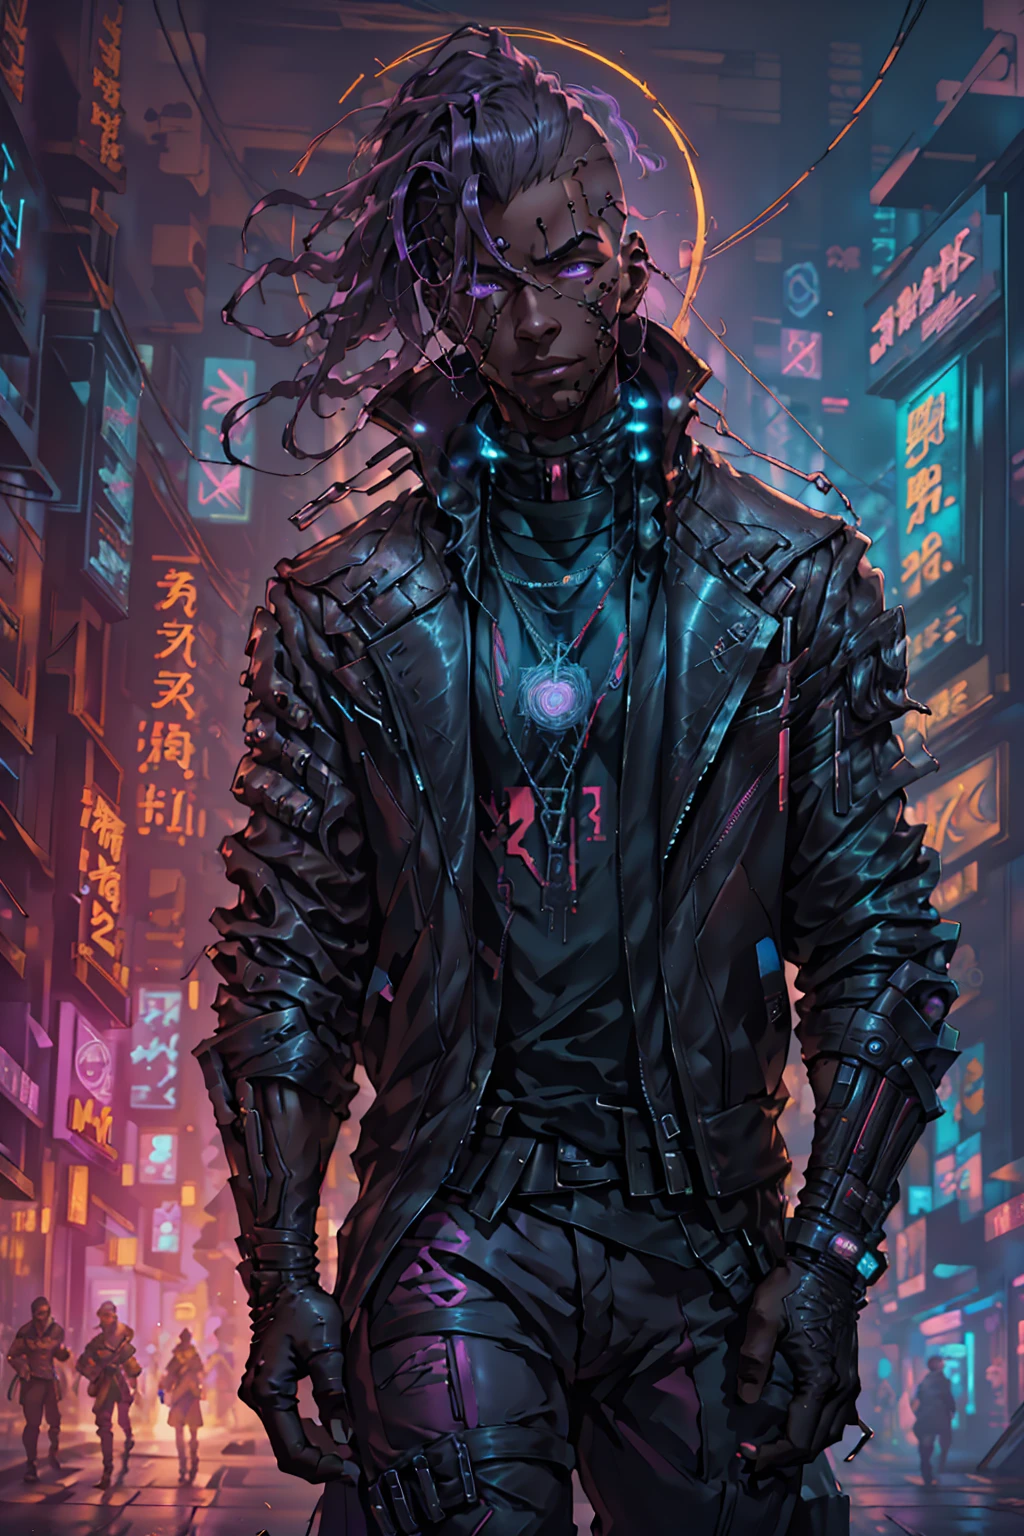 (melhor qualidade, Obra de arte, cheio de detalhes), 1 garota, ilustração oficial da arte do anime, Homem afro-americano com olhos roxos, Homem de pele escura com uma jaqueta de couro marrom andando por uma rua, hyper-realistic estilo ciberpunk, retrato de um homem cyberpunk, cyberpunk art ultrarealistic 8K, estilo ciberpunk ， hiperrealista, personagem ciberpunk, tendência na artstation, personagem completo cinematográfico, tendências no artstation 4k, retrato de um ciborgue cyberpunk, retrato realista cinematográfico, herói cyberpunk perfeitamente fotorrealista, incrivelmente detalhado, 8K, Ultra HD, Obra de arte, melhor qualidade, ultra detalhado, intricado,